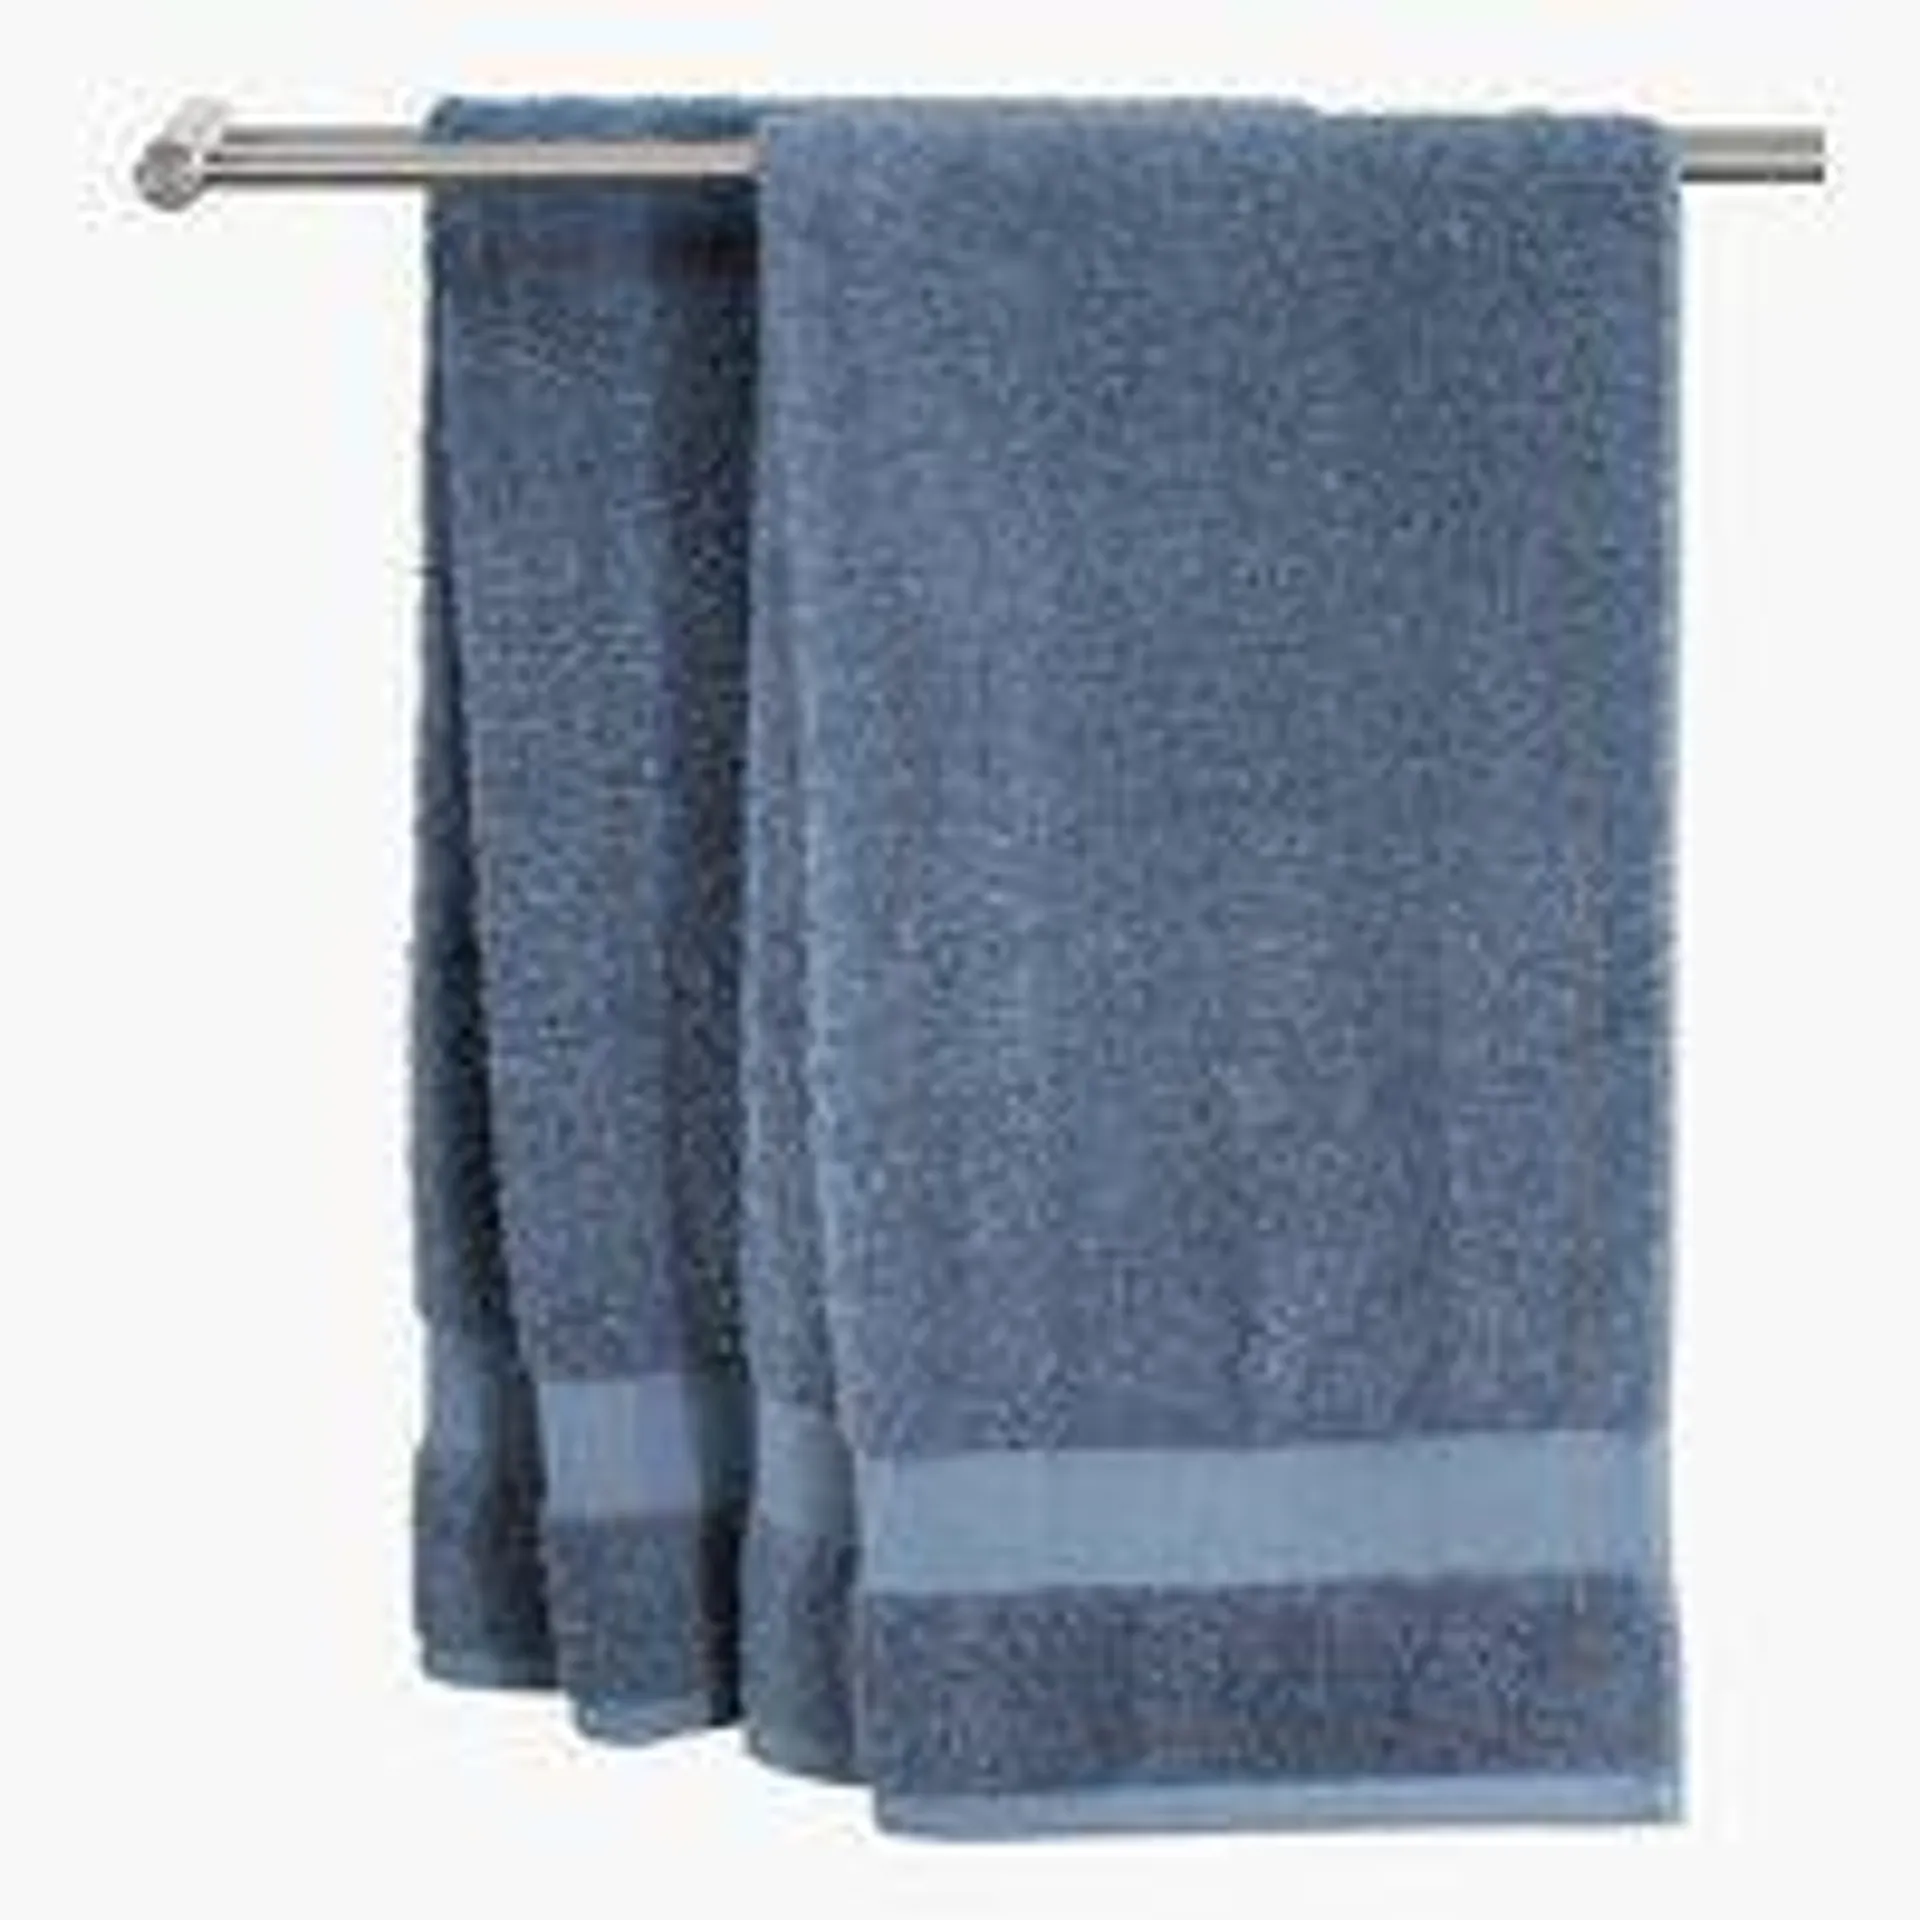 Ręcznik KARLSTAD 50x100 brudnoniebieski